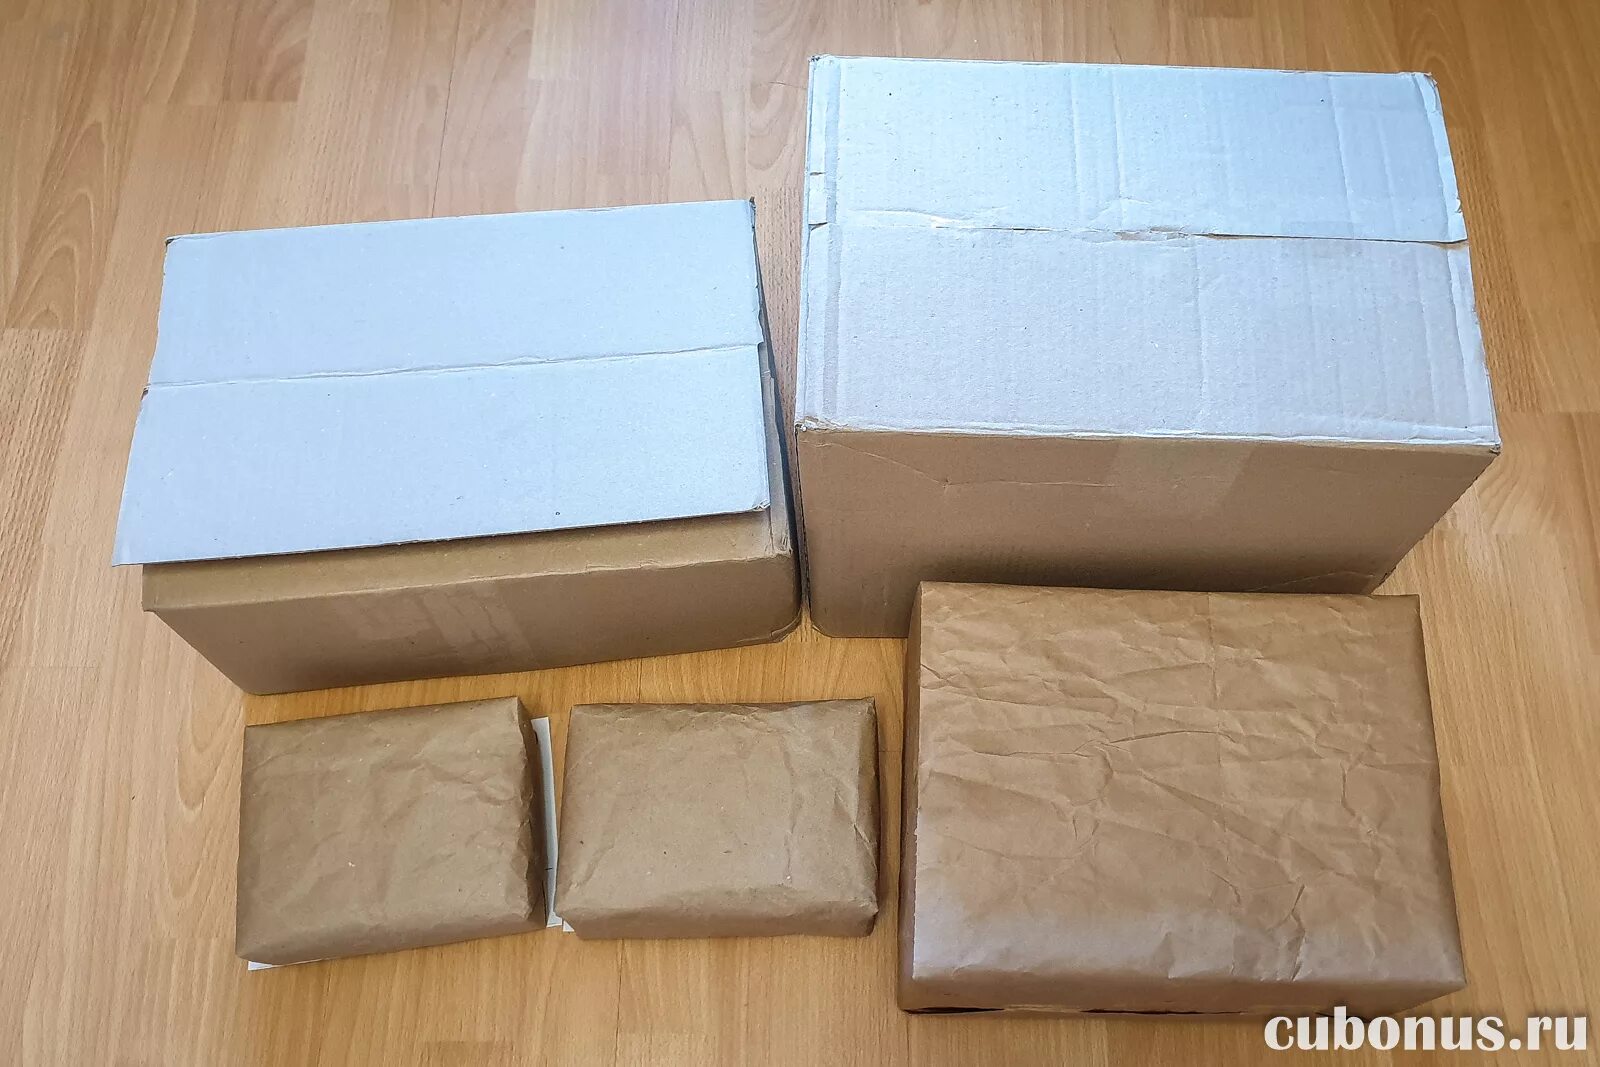 Посылка нестандартная. Упаковка посылки. Упаковка для пересылки. Коробки запечатанные посылки. Упаковка посылки для отправки.